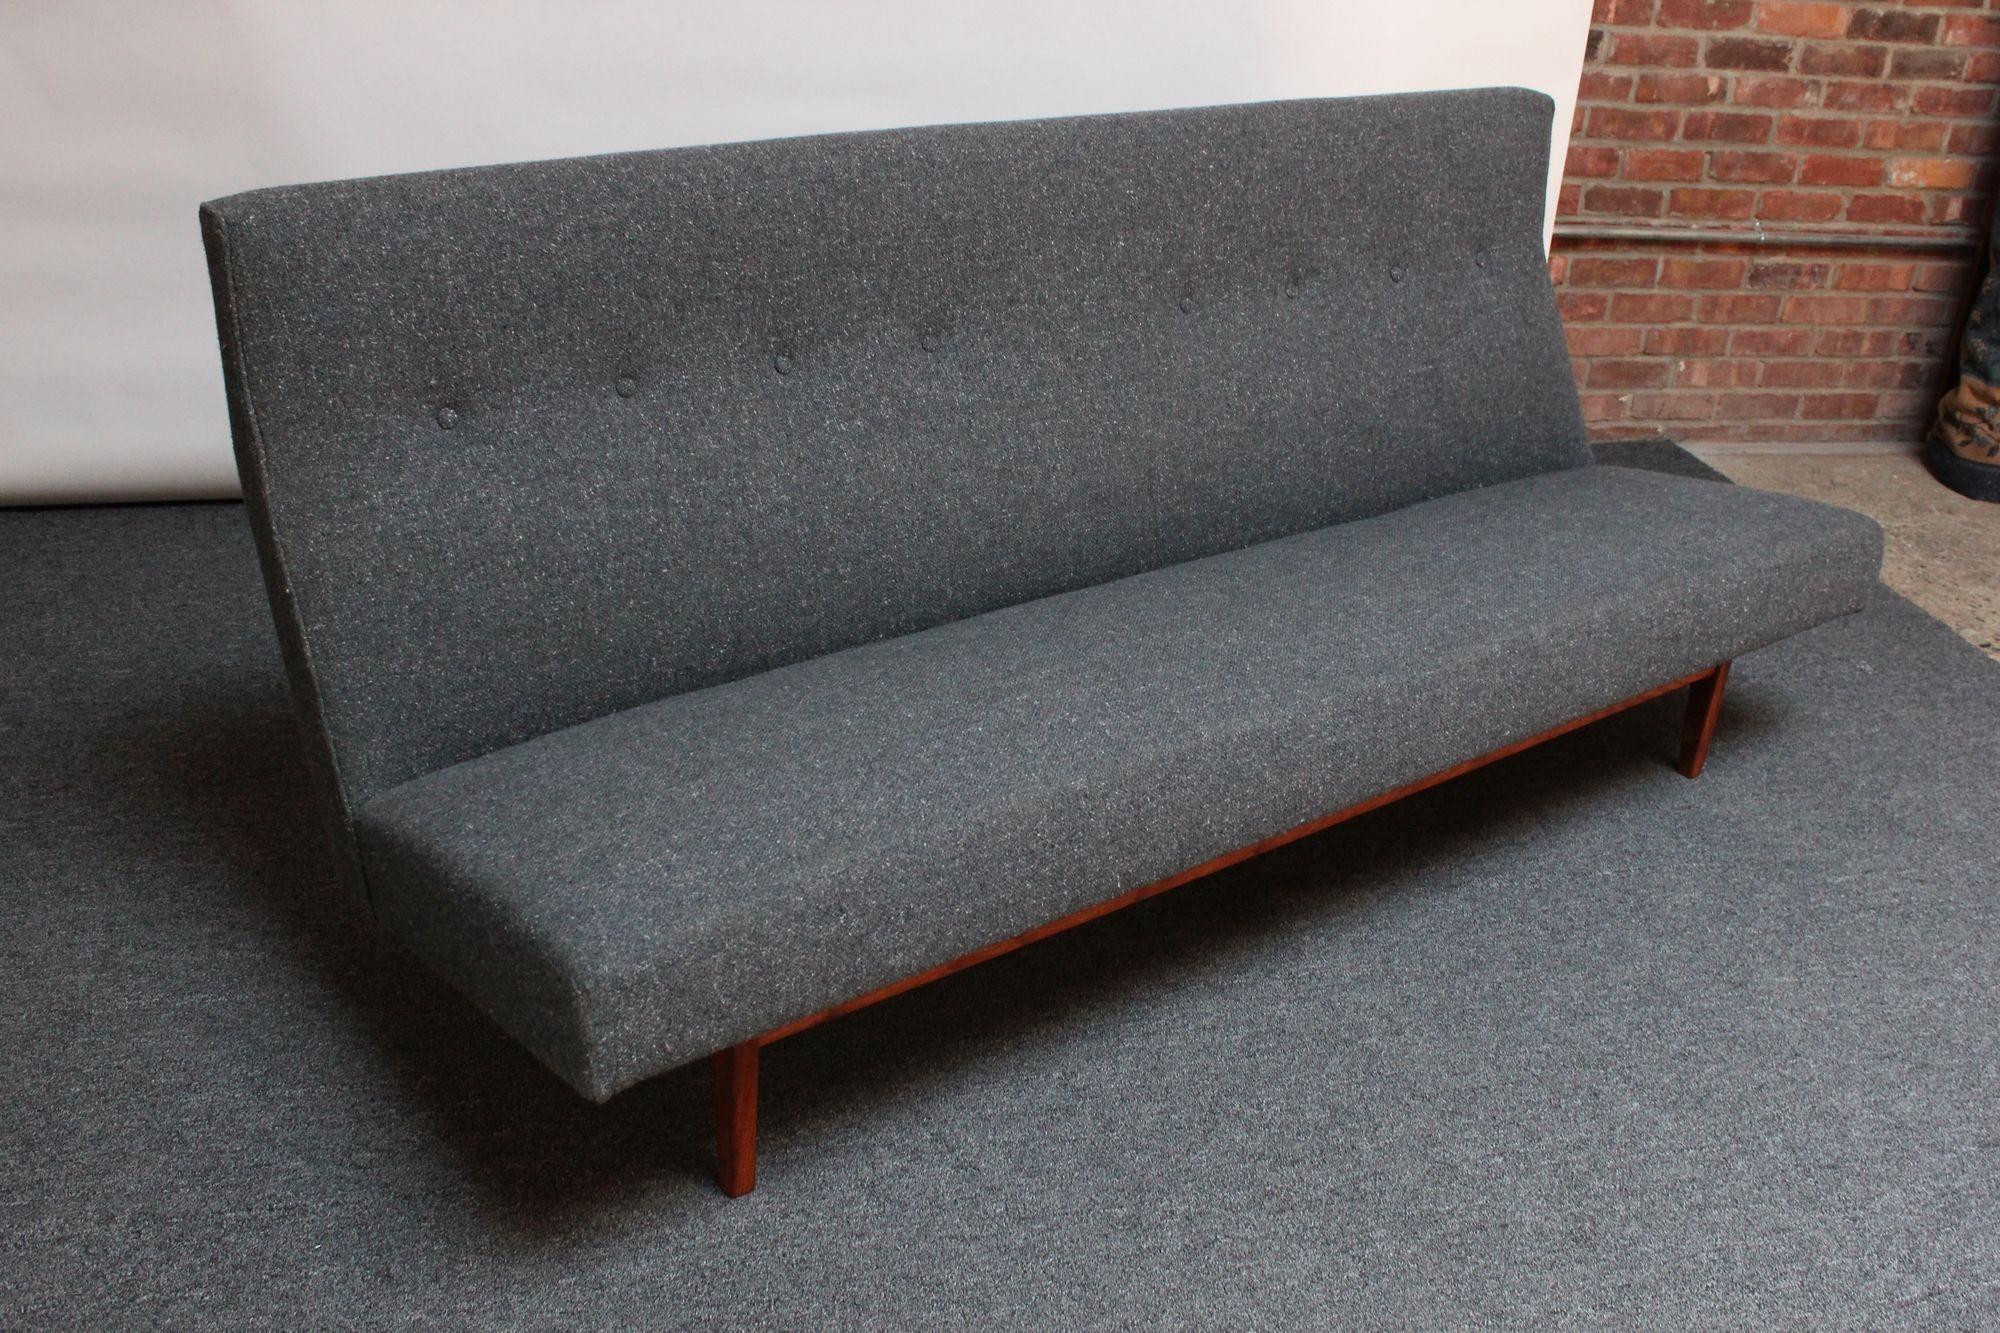 Dreisitziges Sofa, Modell #U250, entworfen von Jens Risom für Risom Design in den 1950er Jahren. Er besteht aus einem skulpturalen Sockel aus Nussbaumholz, auf dem der getuftete Sitz mit hoher Rückenlehne montiert ist. Scharfe, modernistische